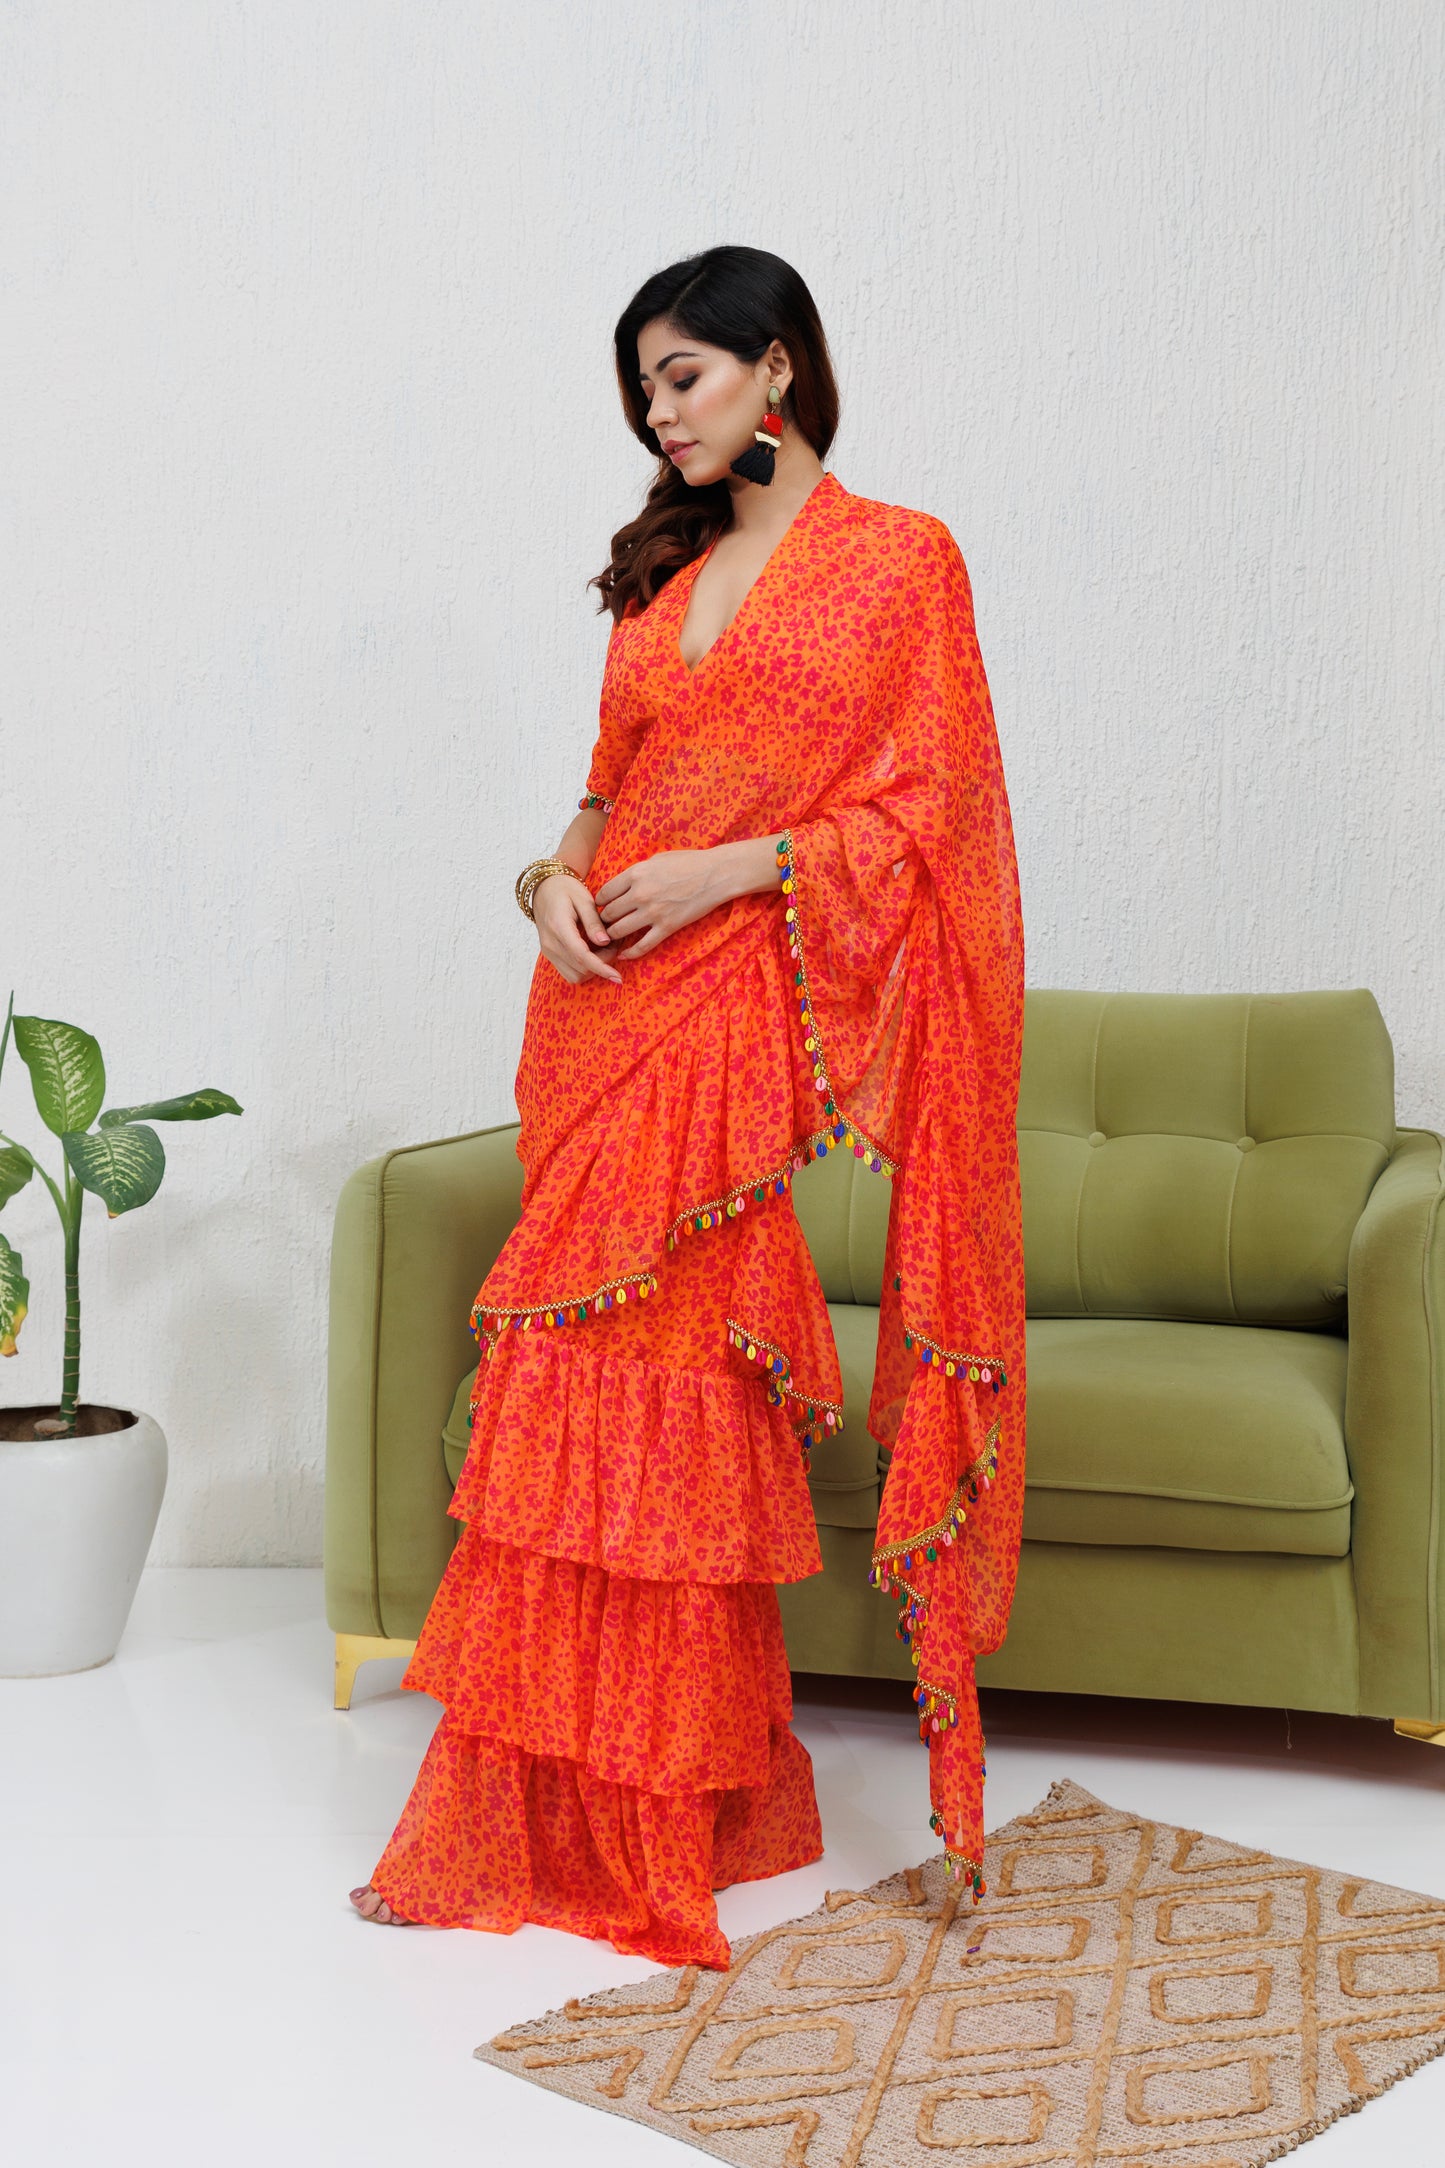 Mystique Melange: Orange printed ruffle saree